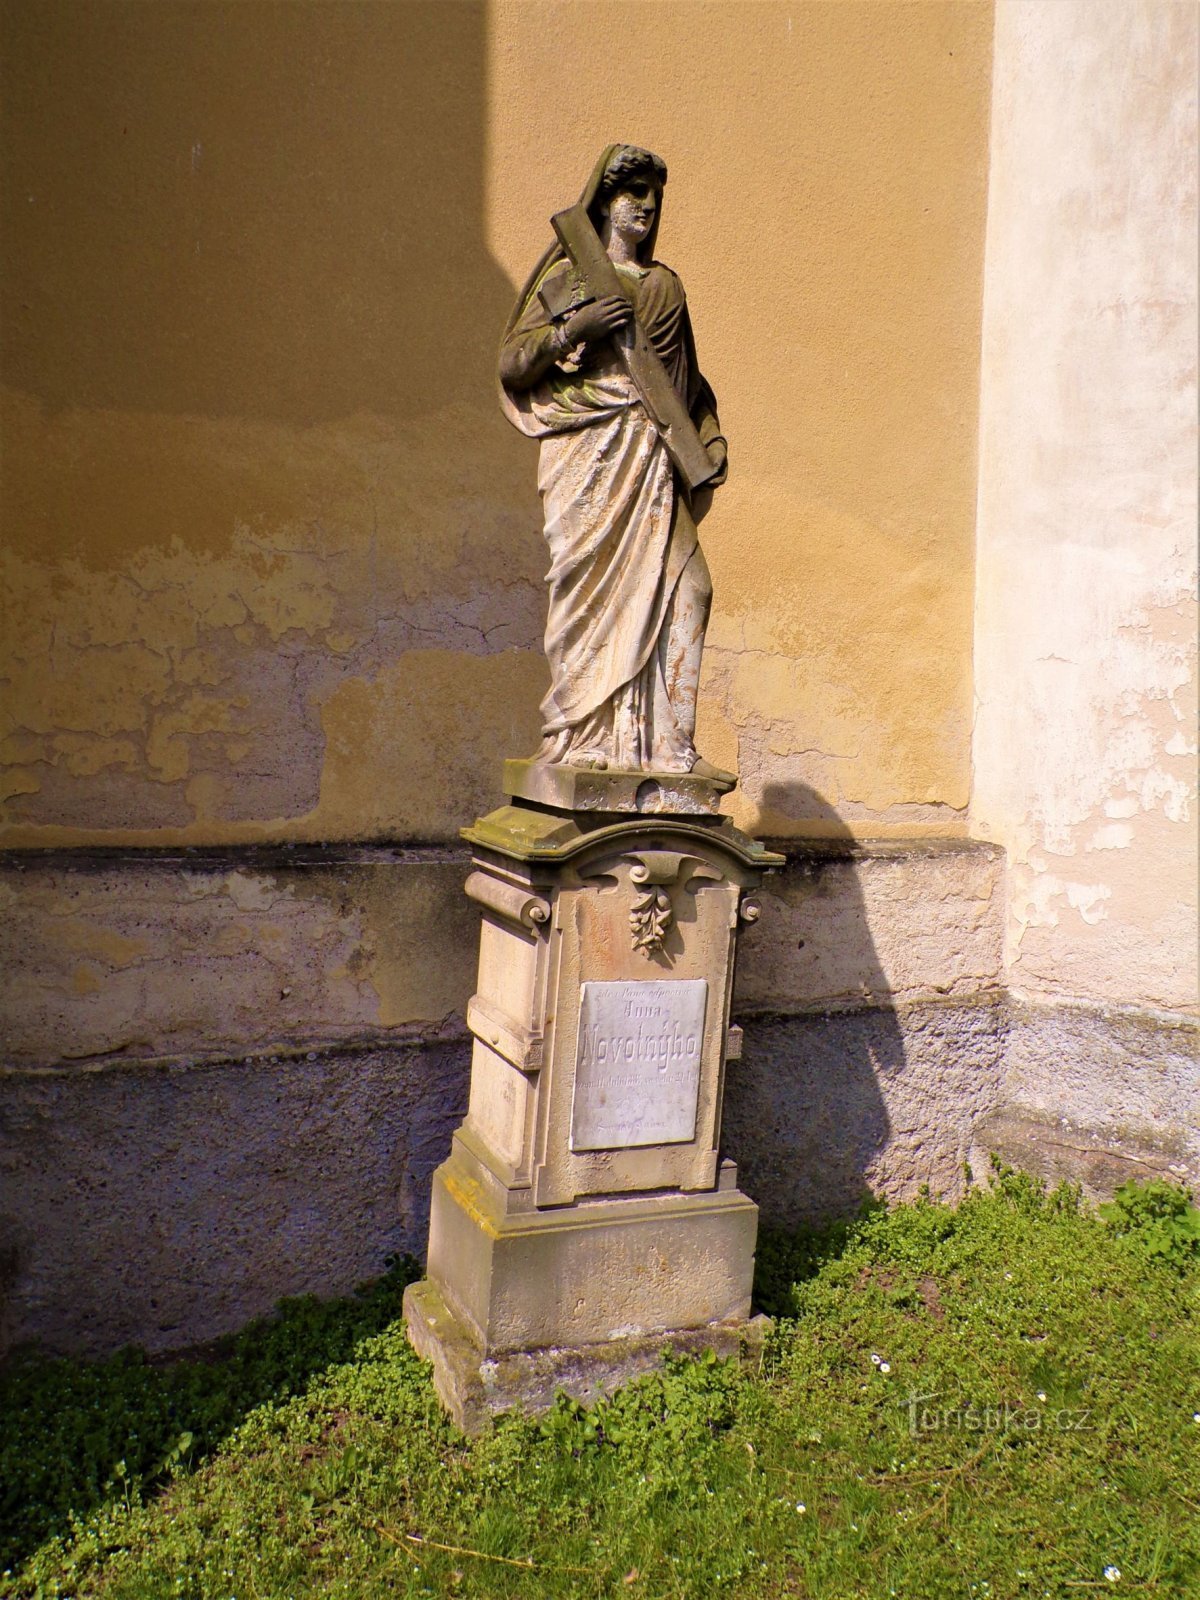 Nadgrobni spomenik na starom groblju kod crkve (Kratonohy, 21.4.2021.)